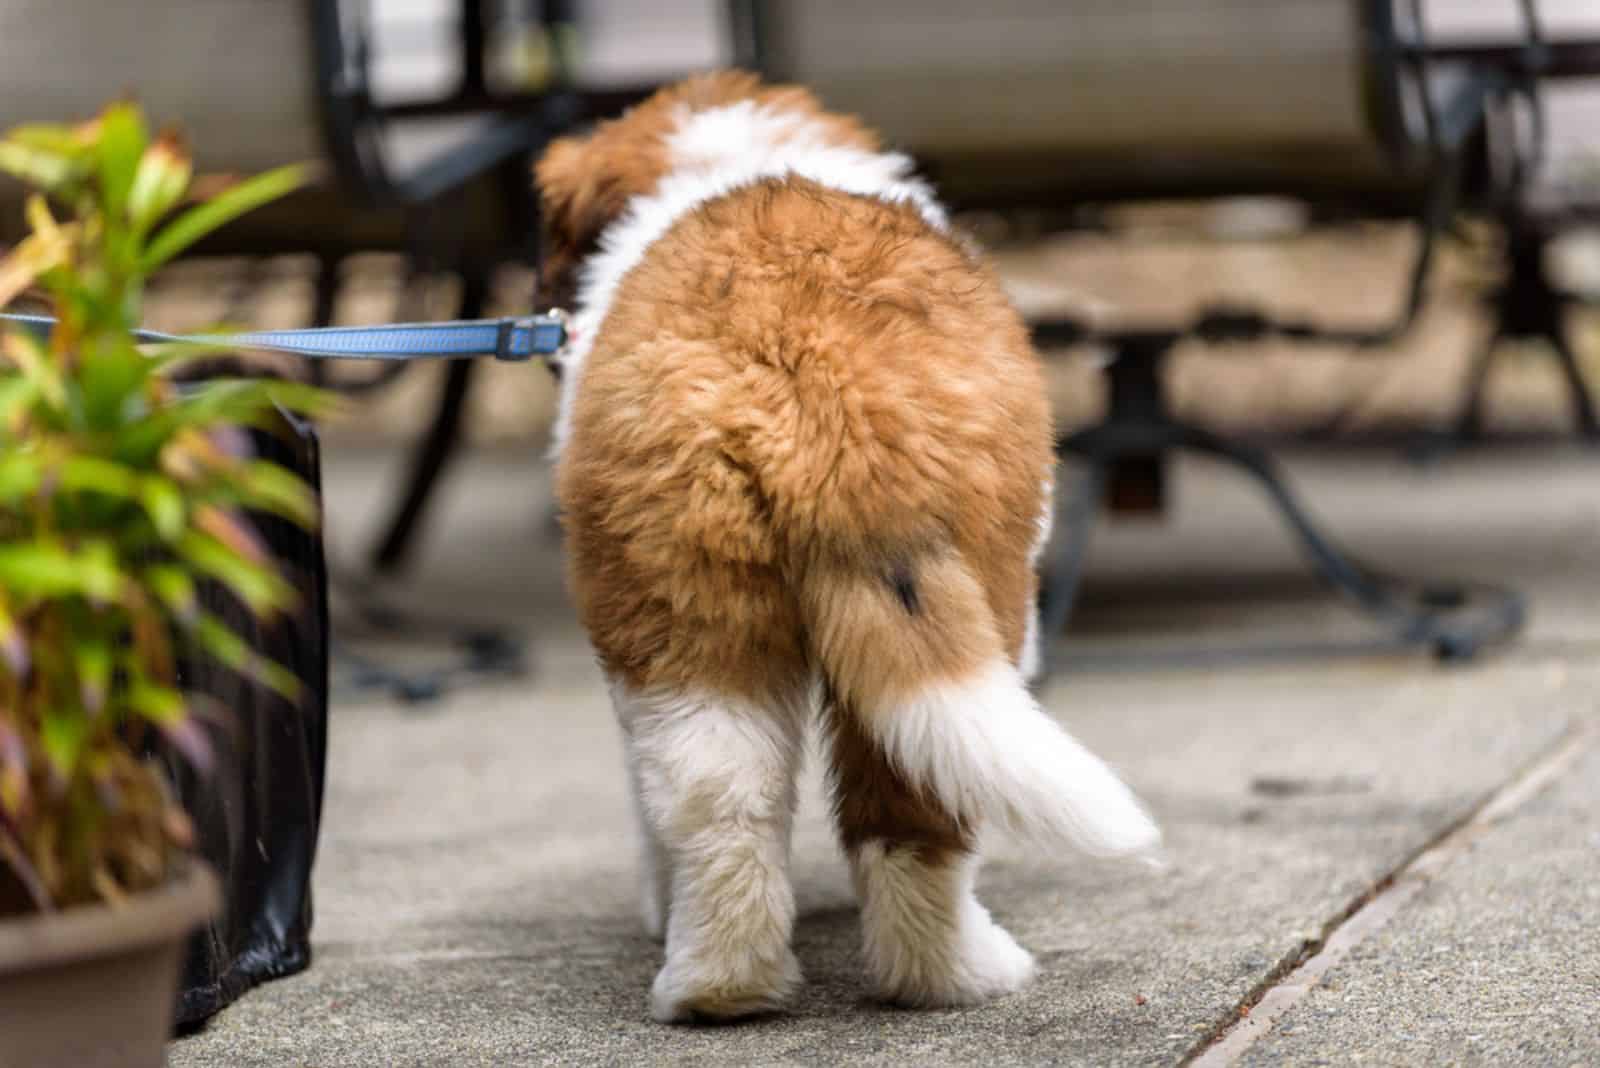 Saint Bernard puppy on a leash on a patio